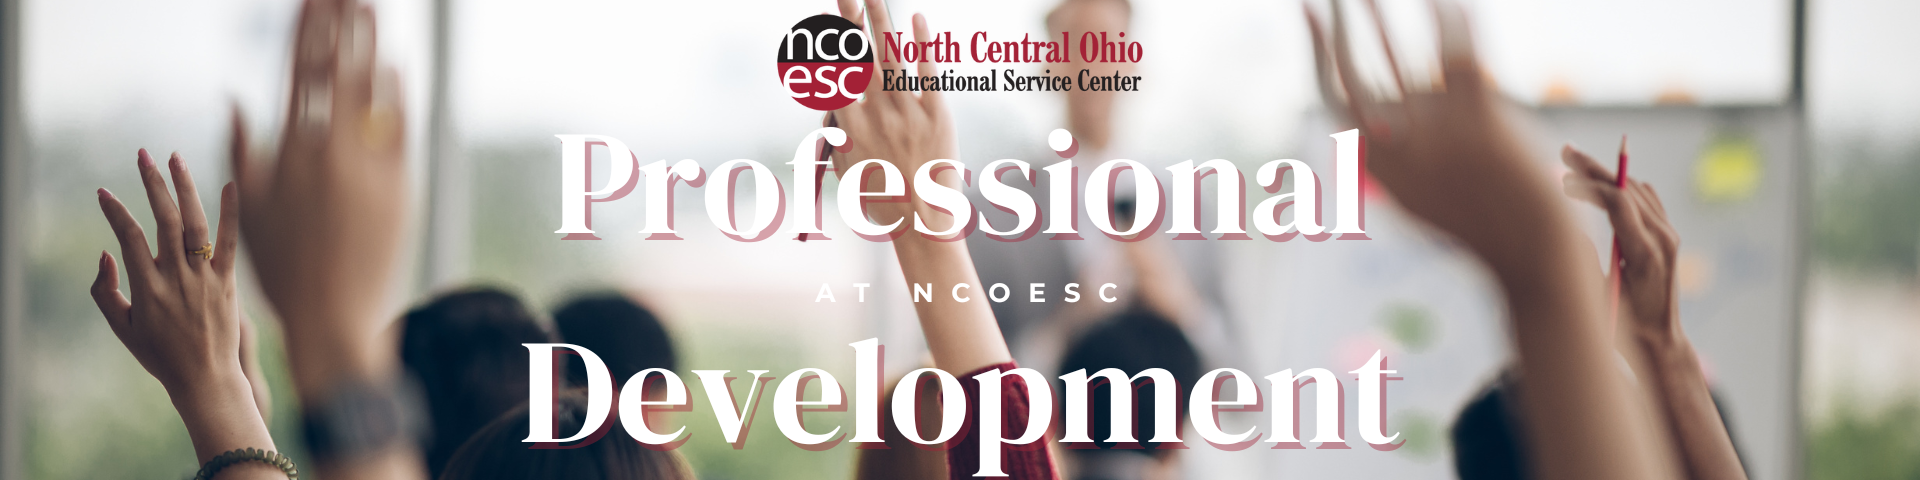 Professional Development at NCOESC